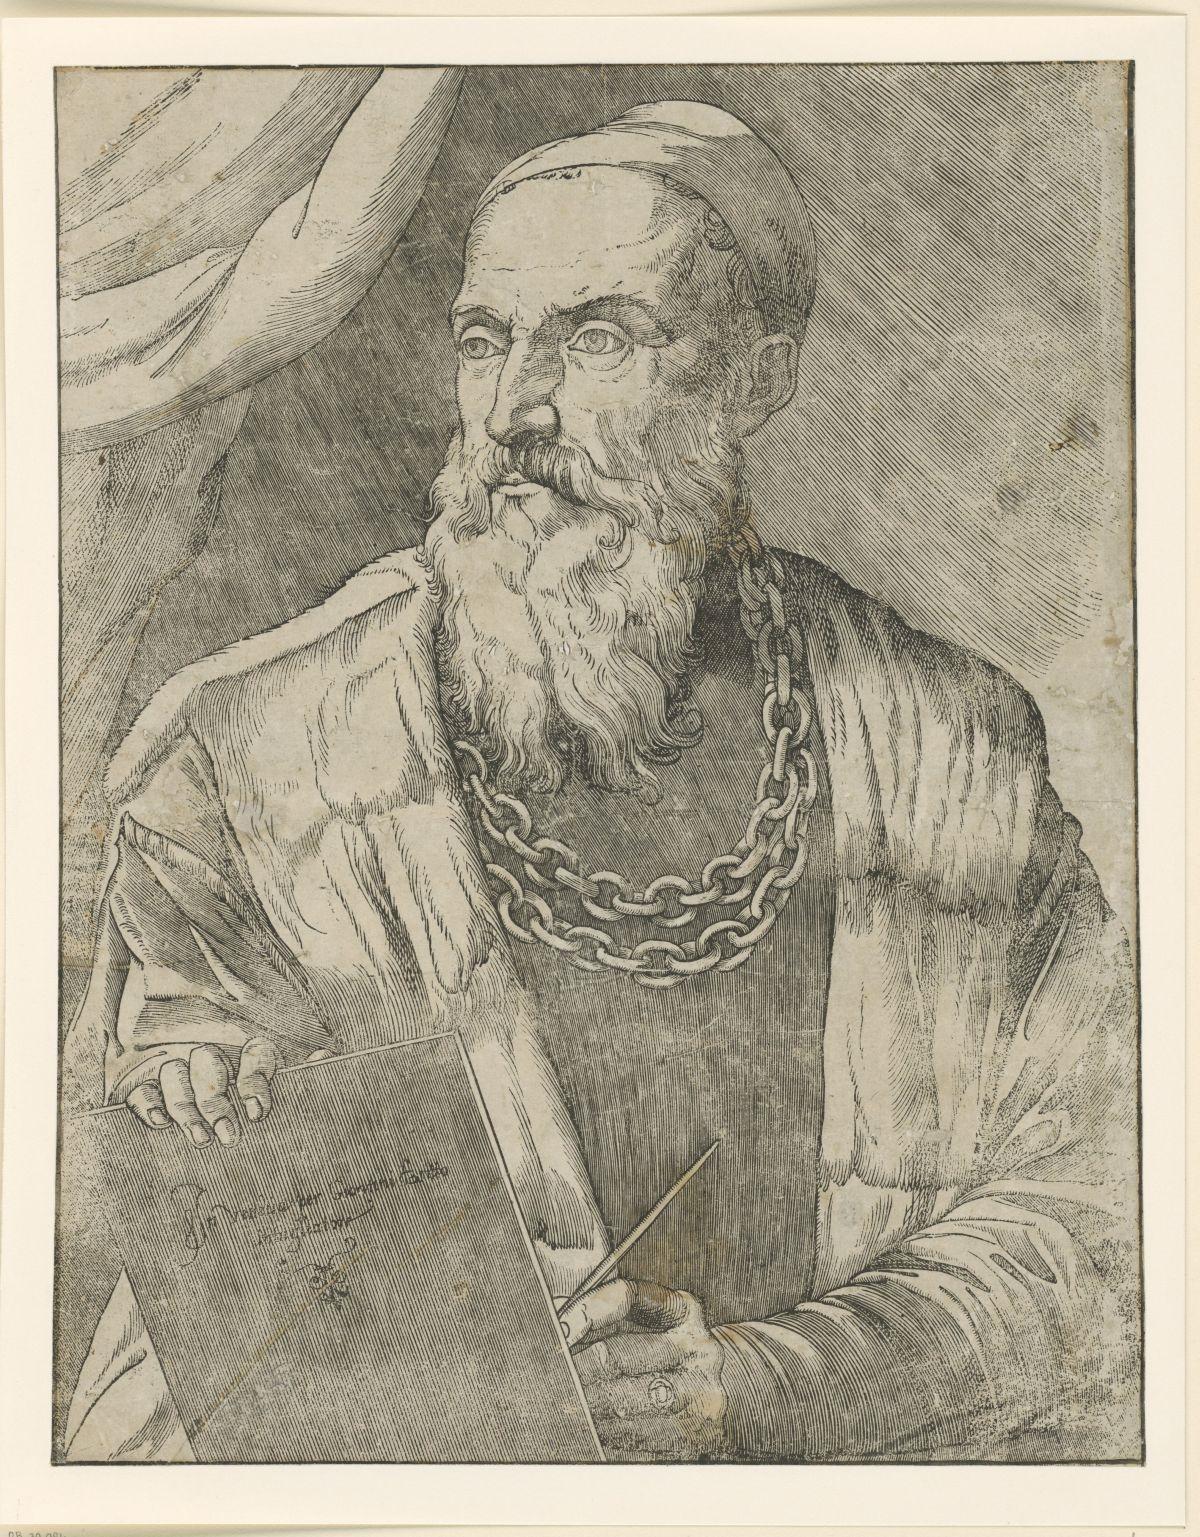 Autoritratto di Tiziano